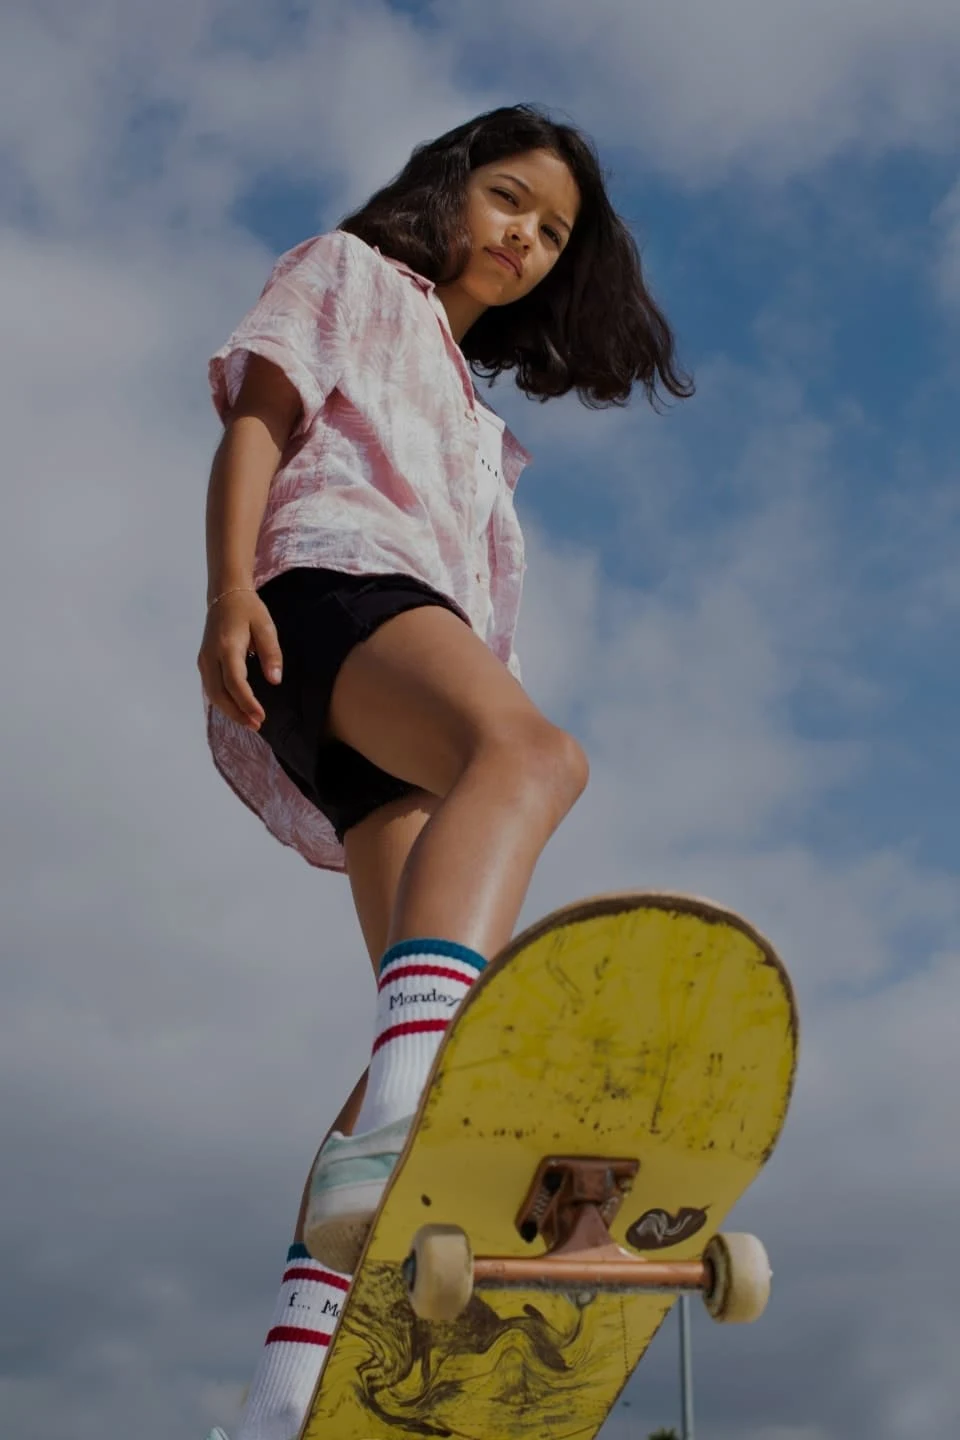 Una ragazza dai capelli castani su uno skateboard giallo